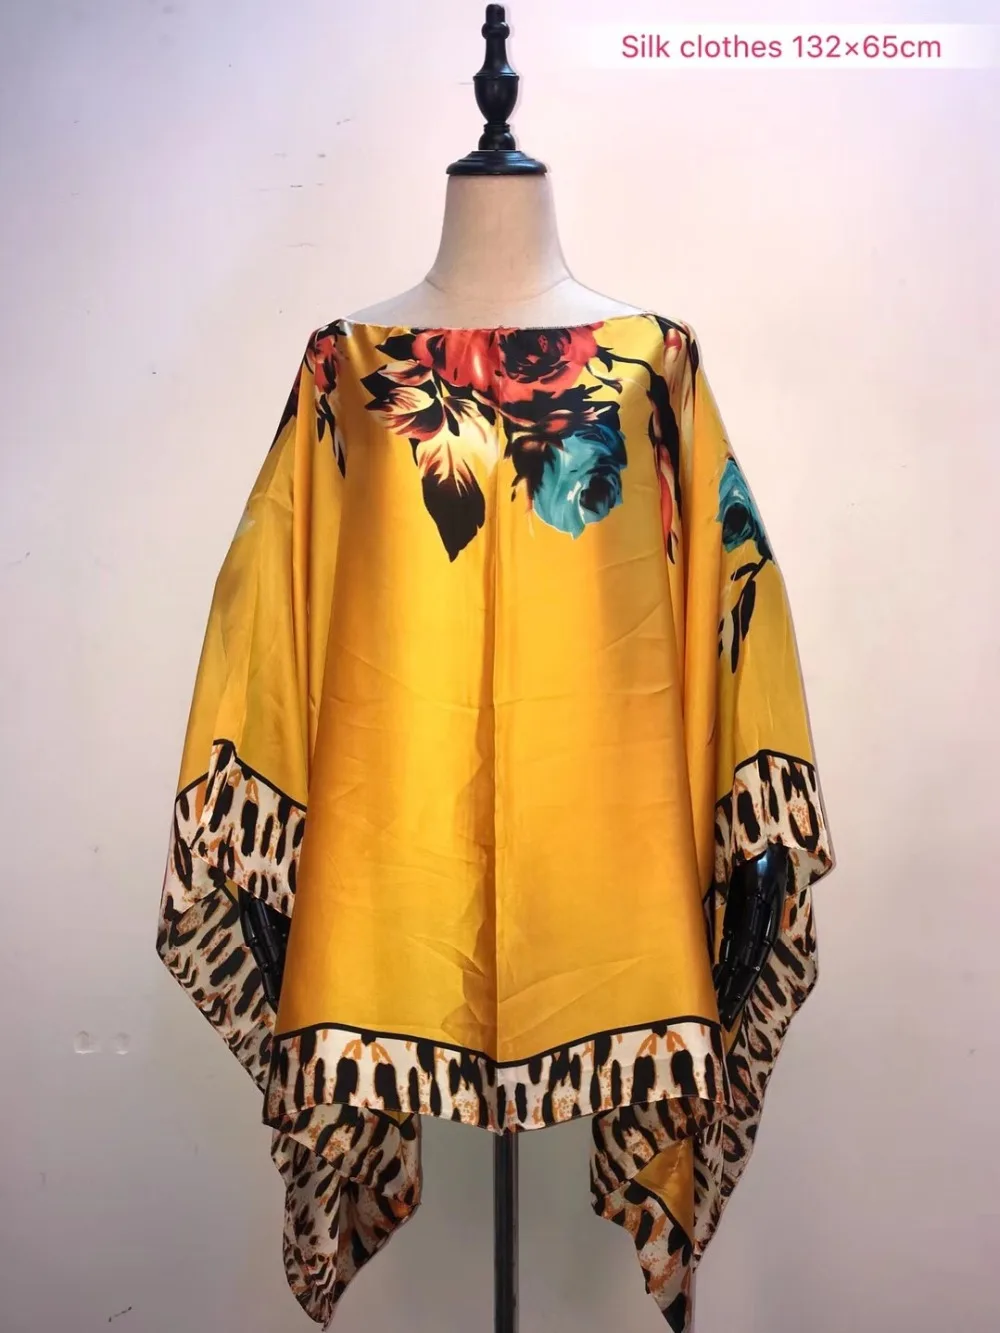 Летний модный Шелковый материал с принтом Топ размер 132 см ширина x65см длина Топ африканская одежда для женщин